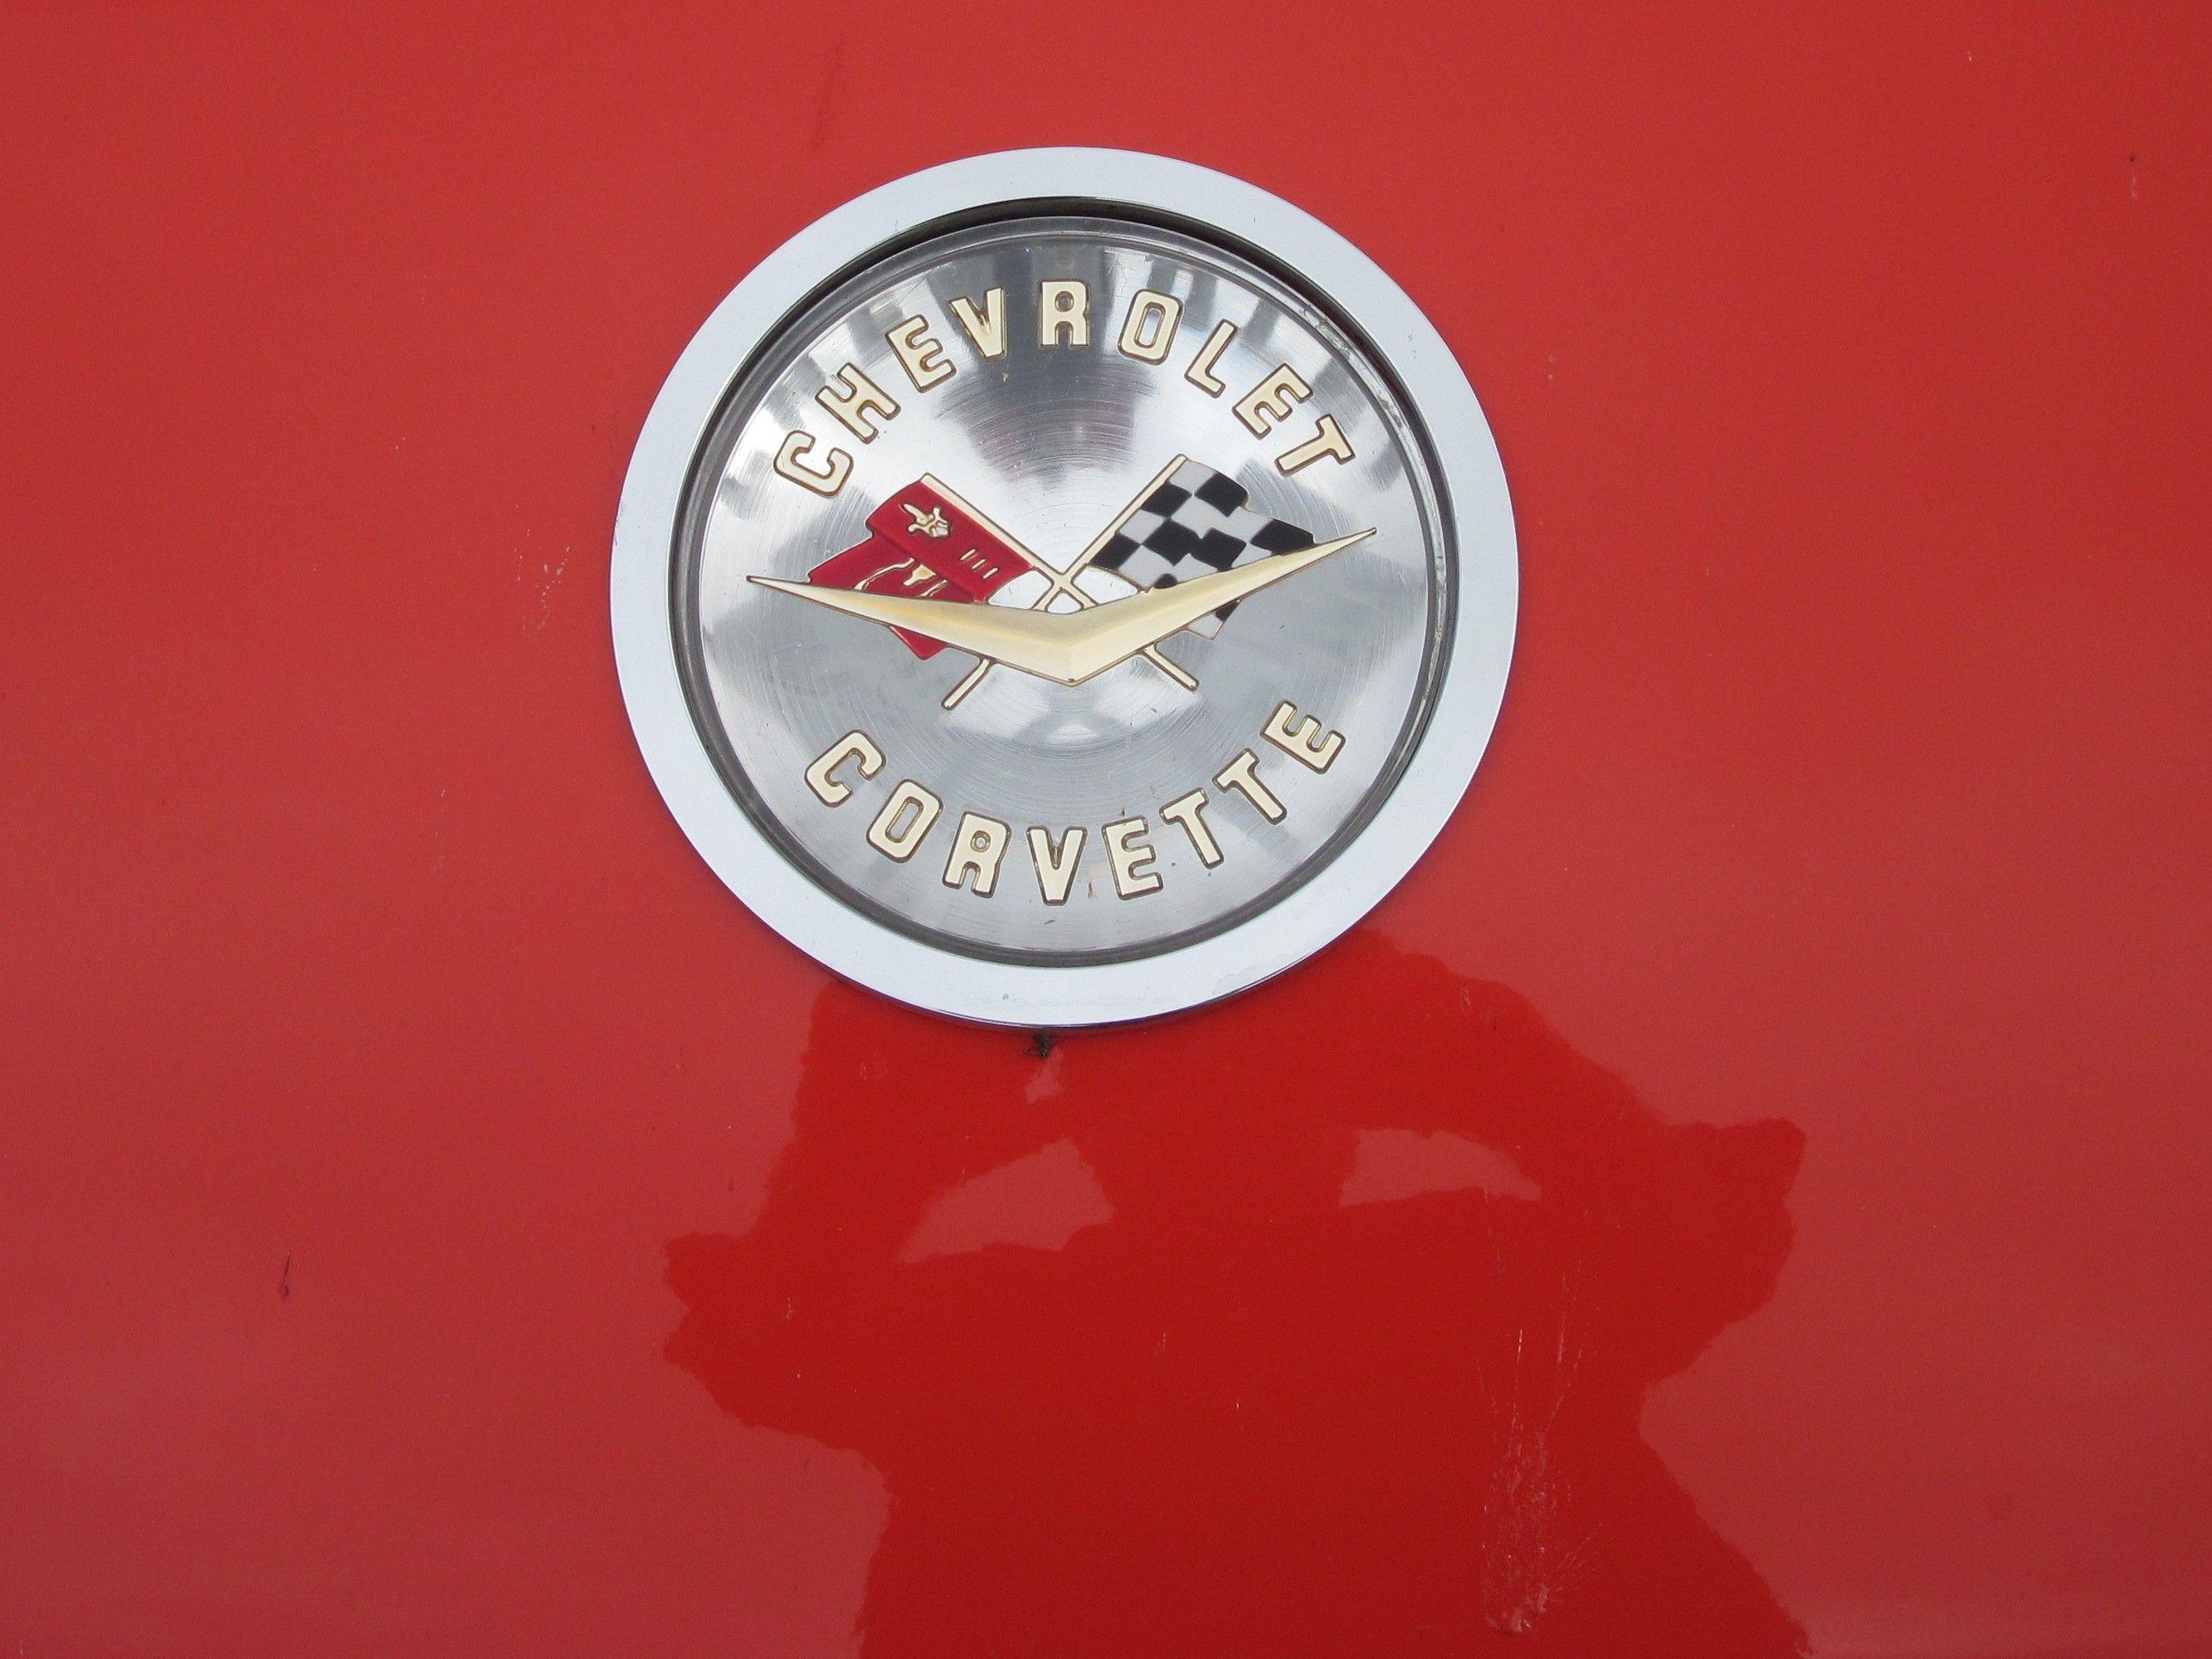 Chevrolet corvette logo wallpaper. PC